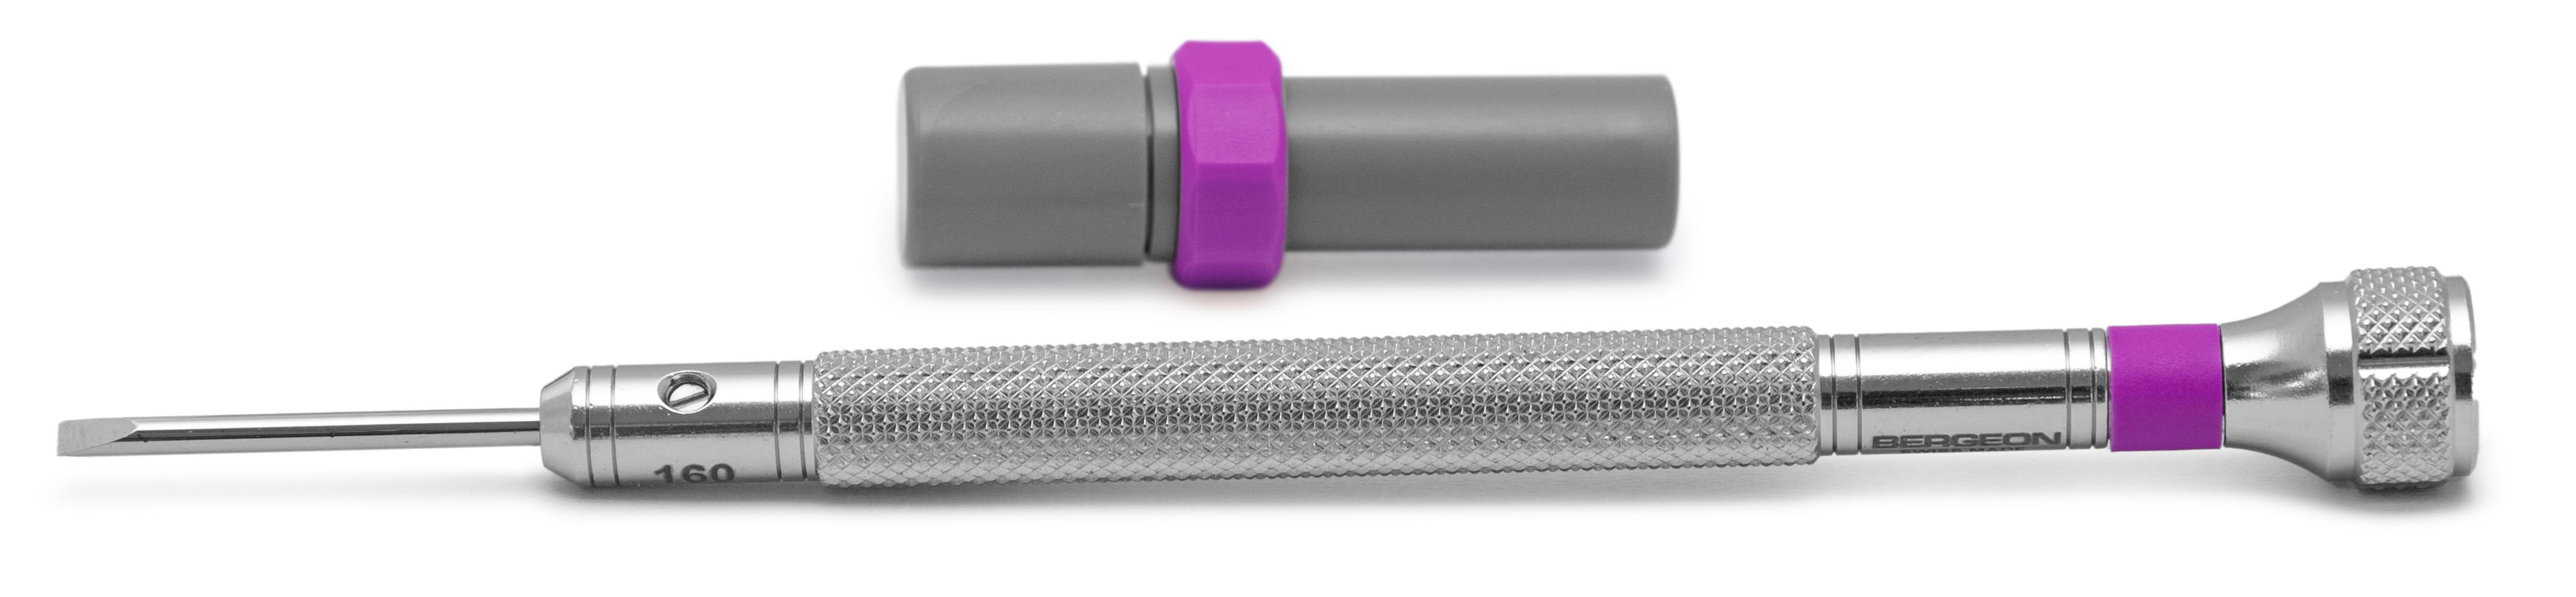 Bergeon 30080-H tournevis, mèche 1,6 mm, violet, avec mèches de rechange